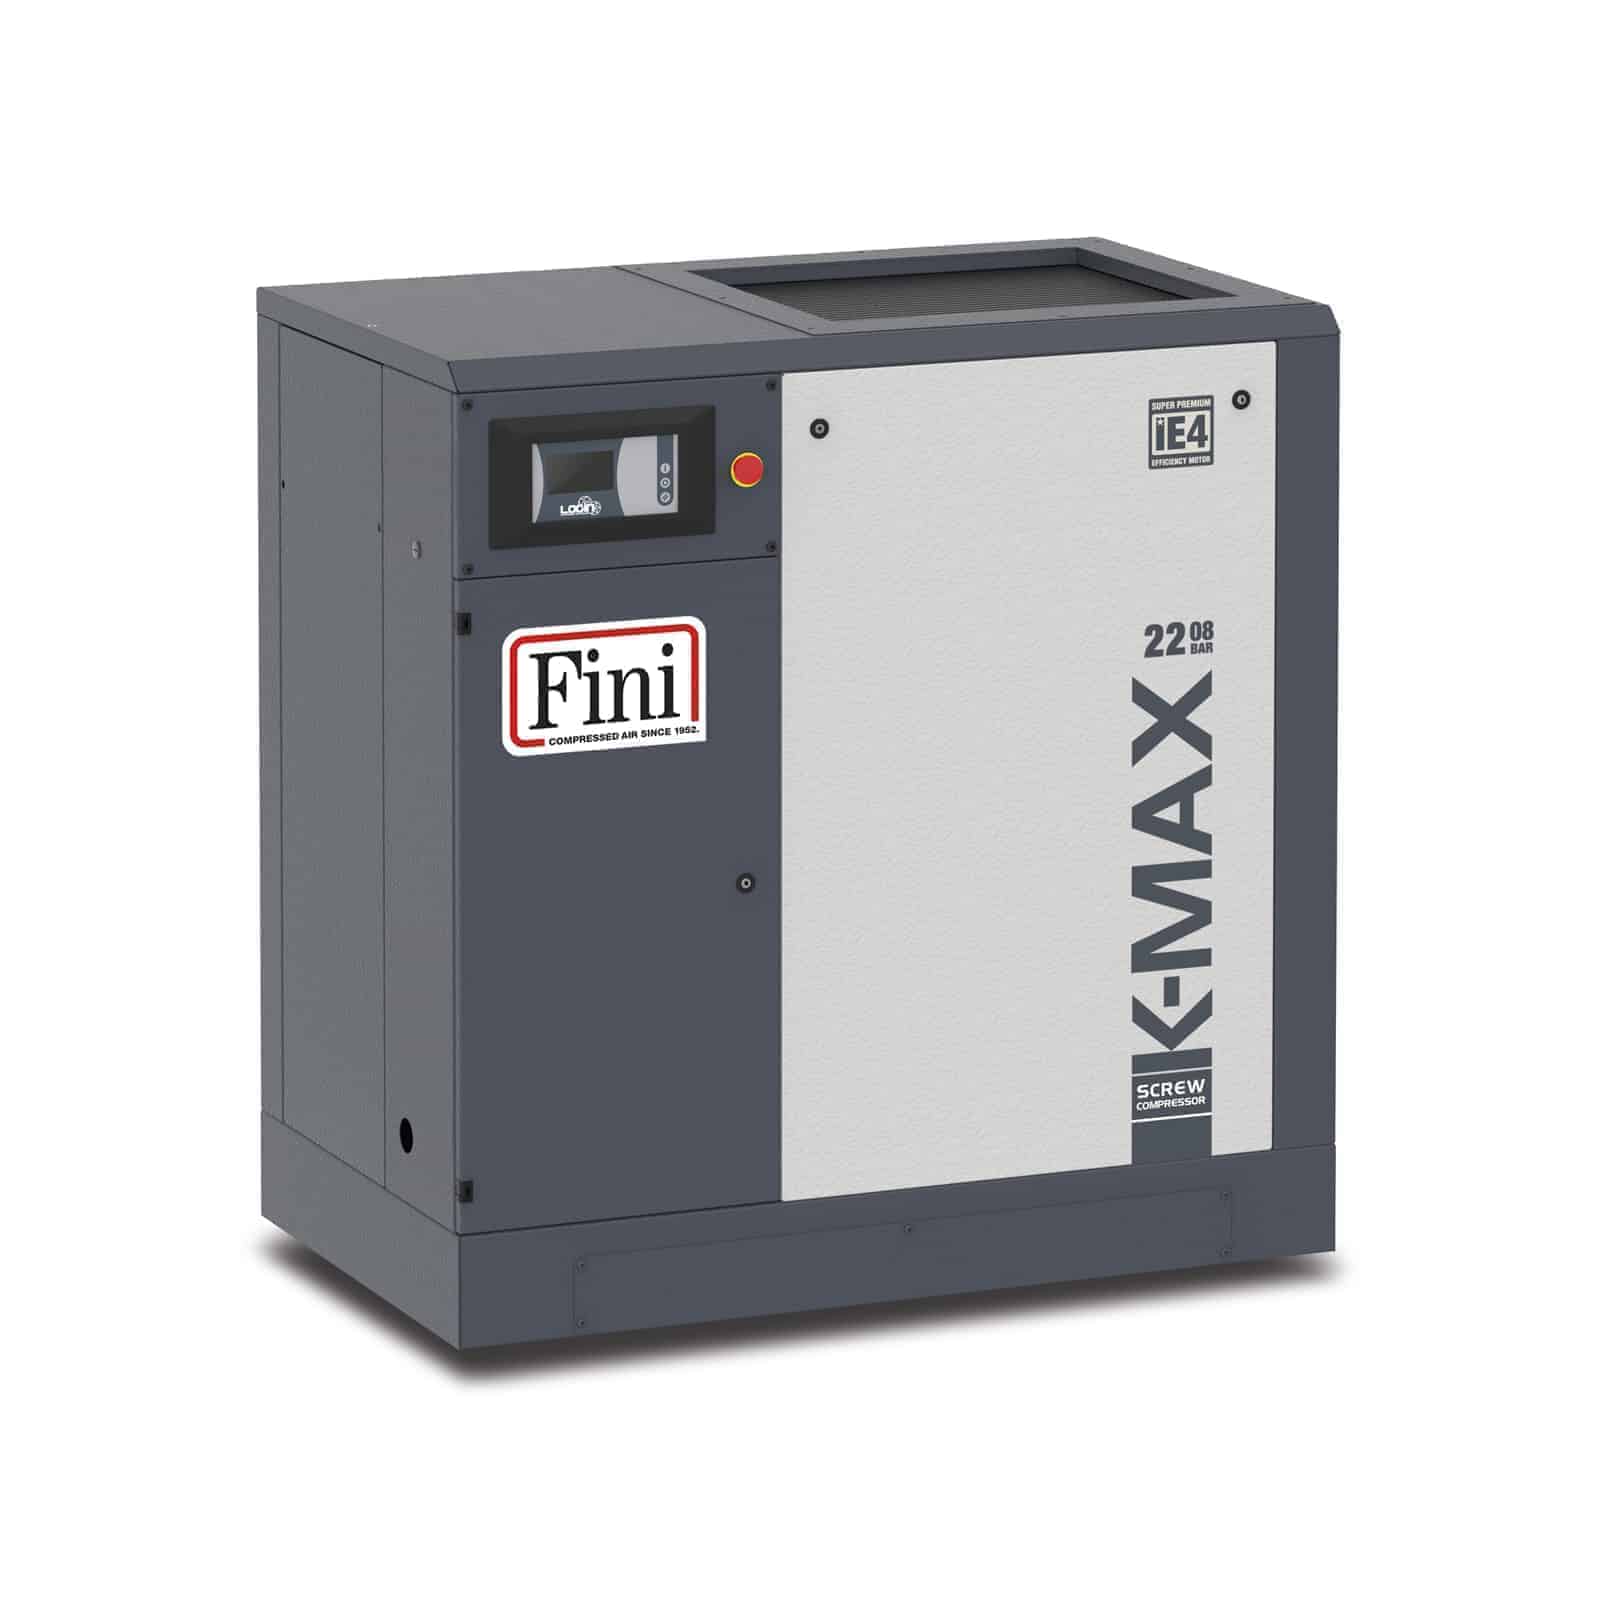 K-MAX 22-08 Compressore a vite ad alta efficienza, con trasmissione diretta.